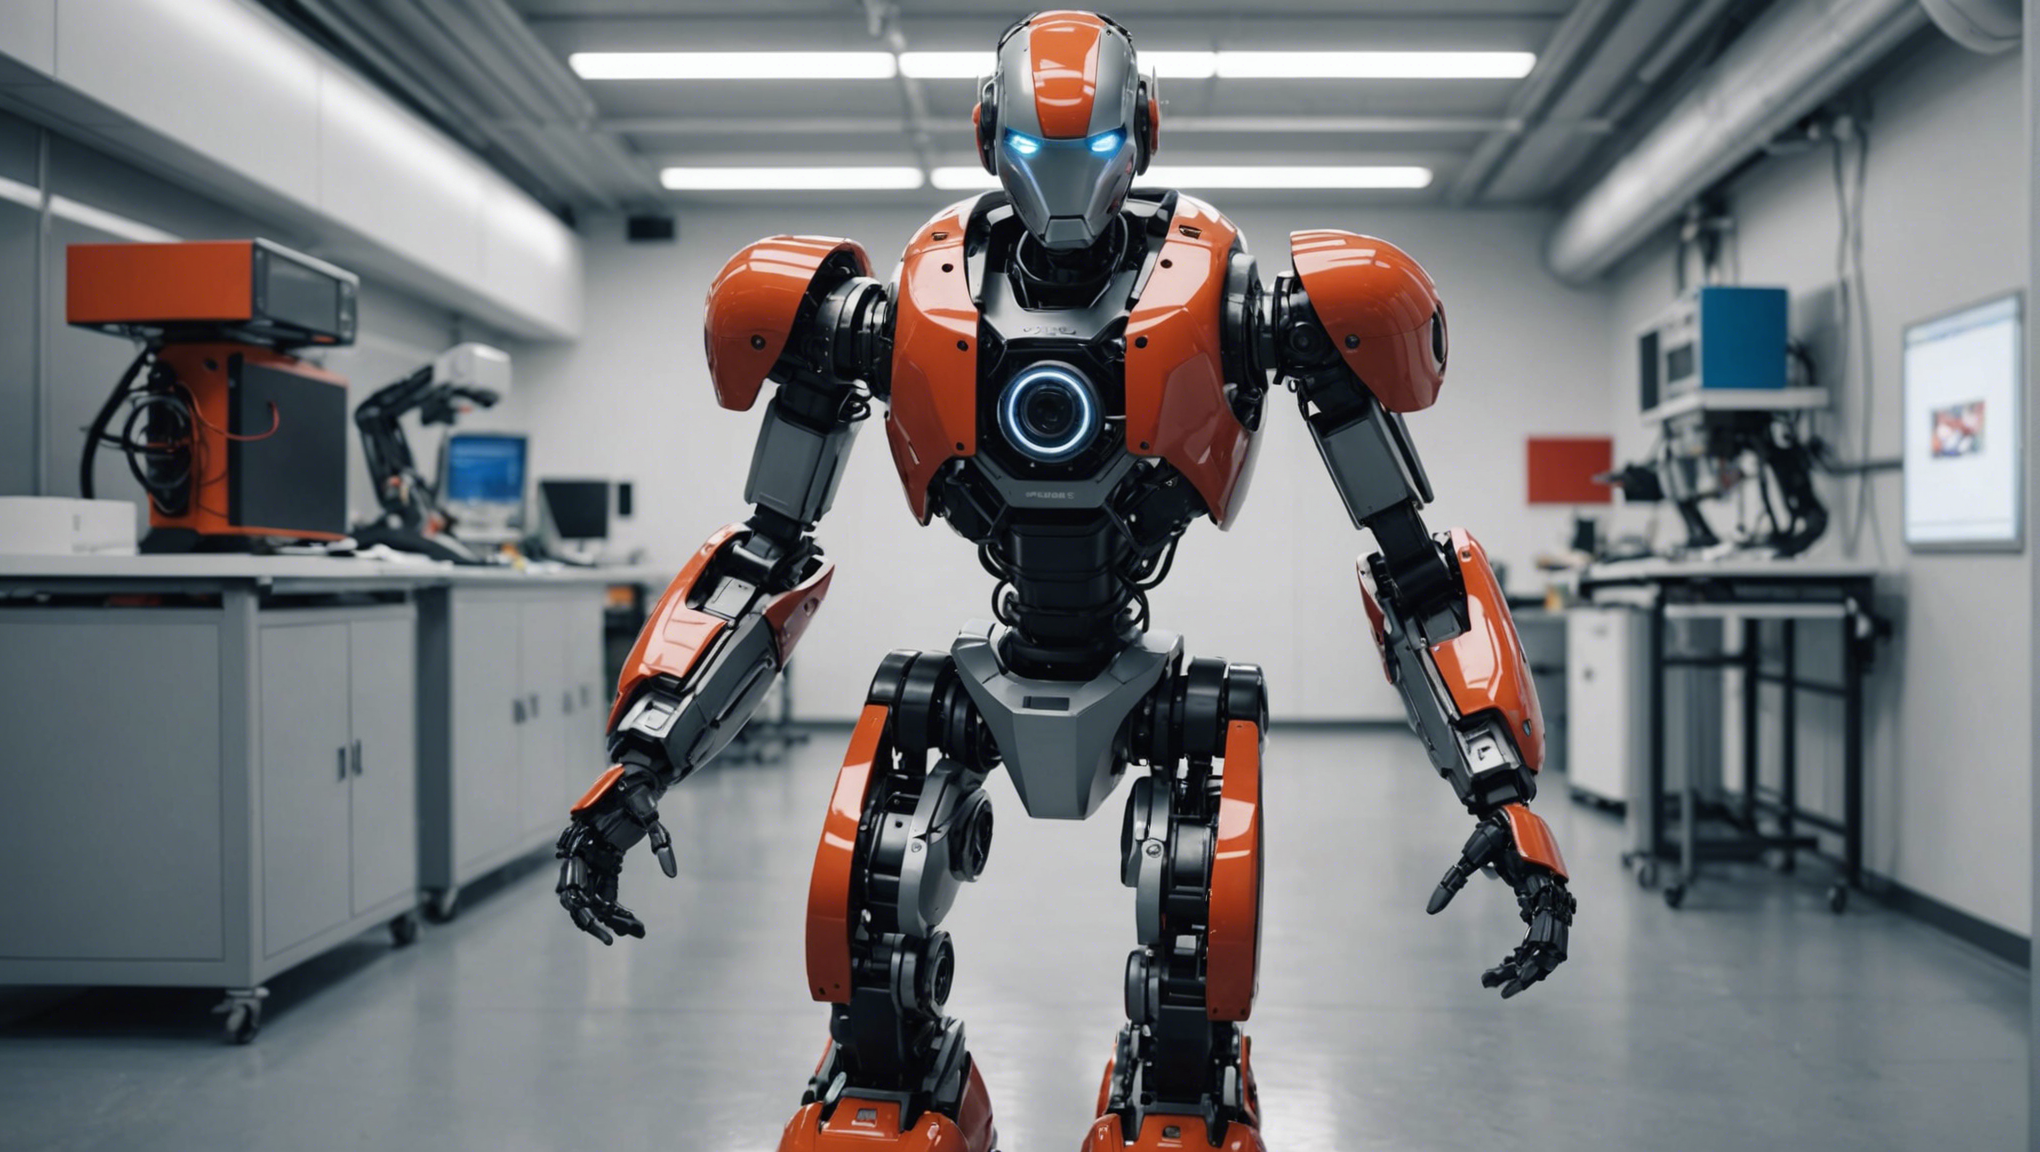 découvrez les robots nouvelle génération à l'epfl, l'ecole polytechnique de lausanne. des avancées technologiques révolutionnaires vous attendent dans le domaine de la robotique.